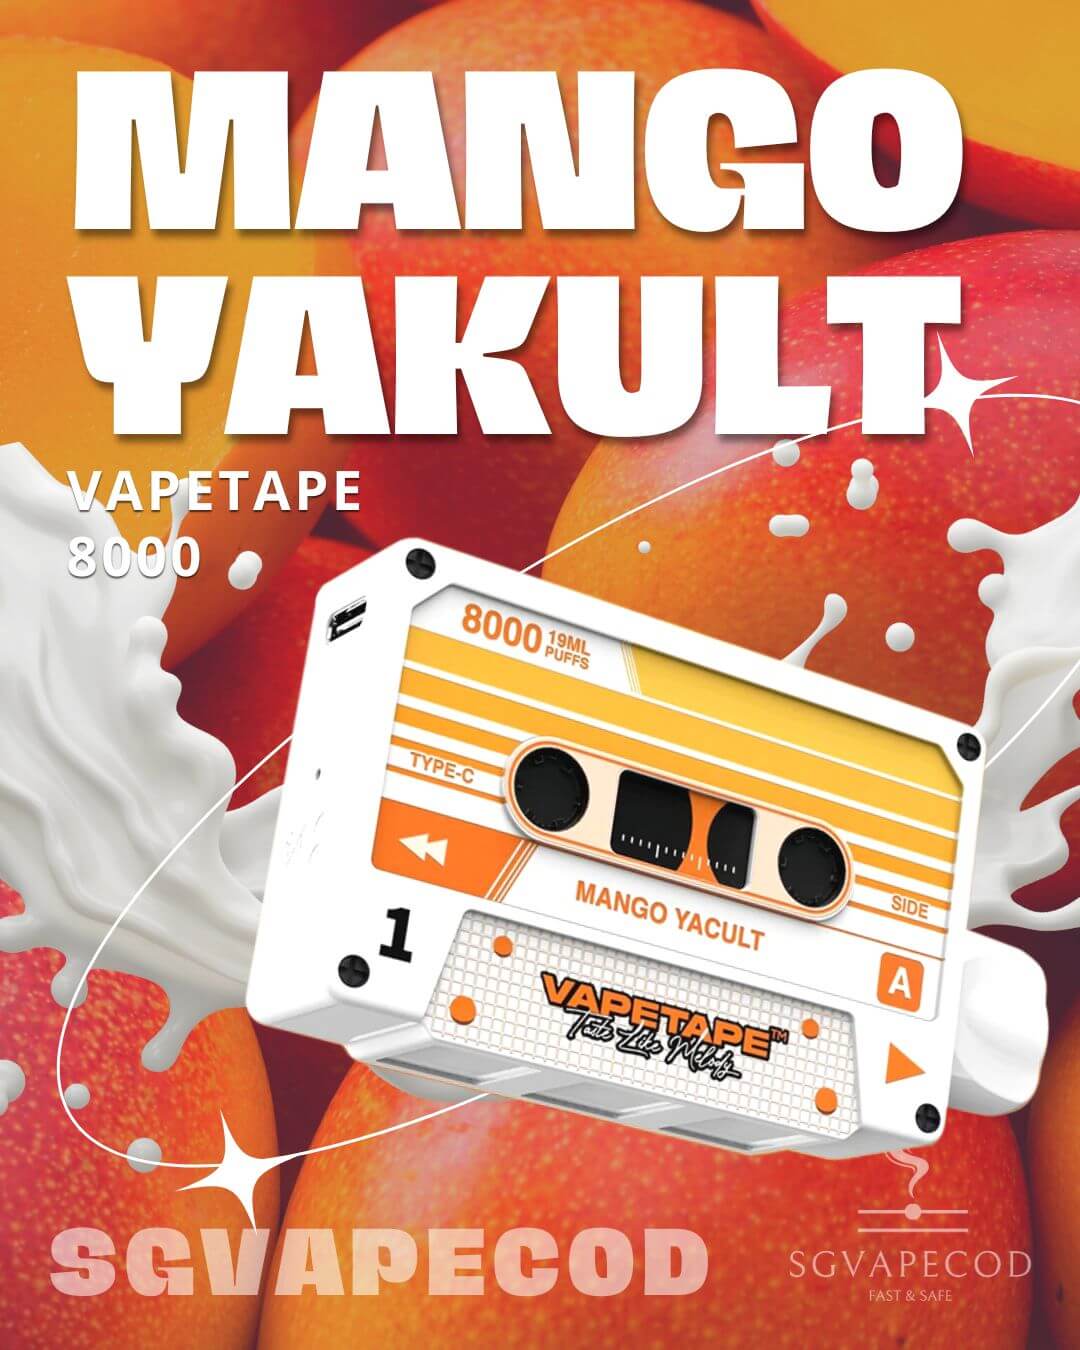 Vapetape-8000-Mango-Yakult-(SG VAPE COD)